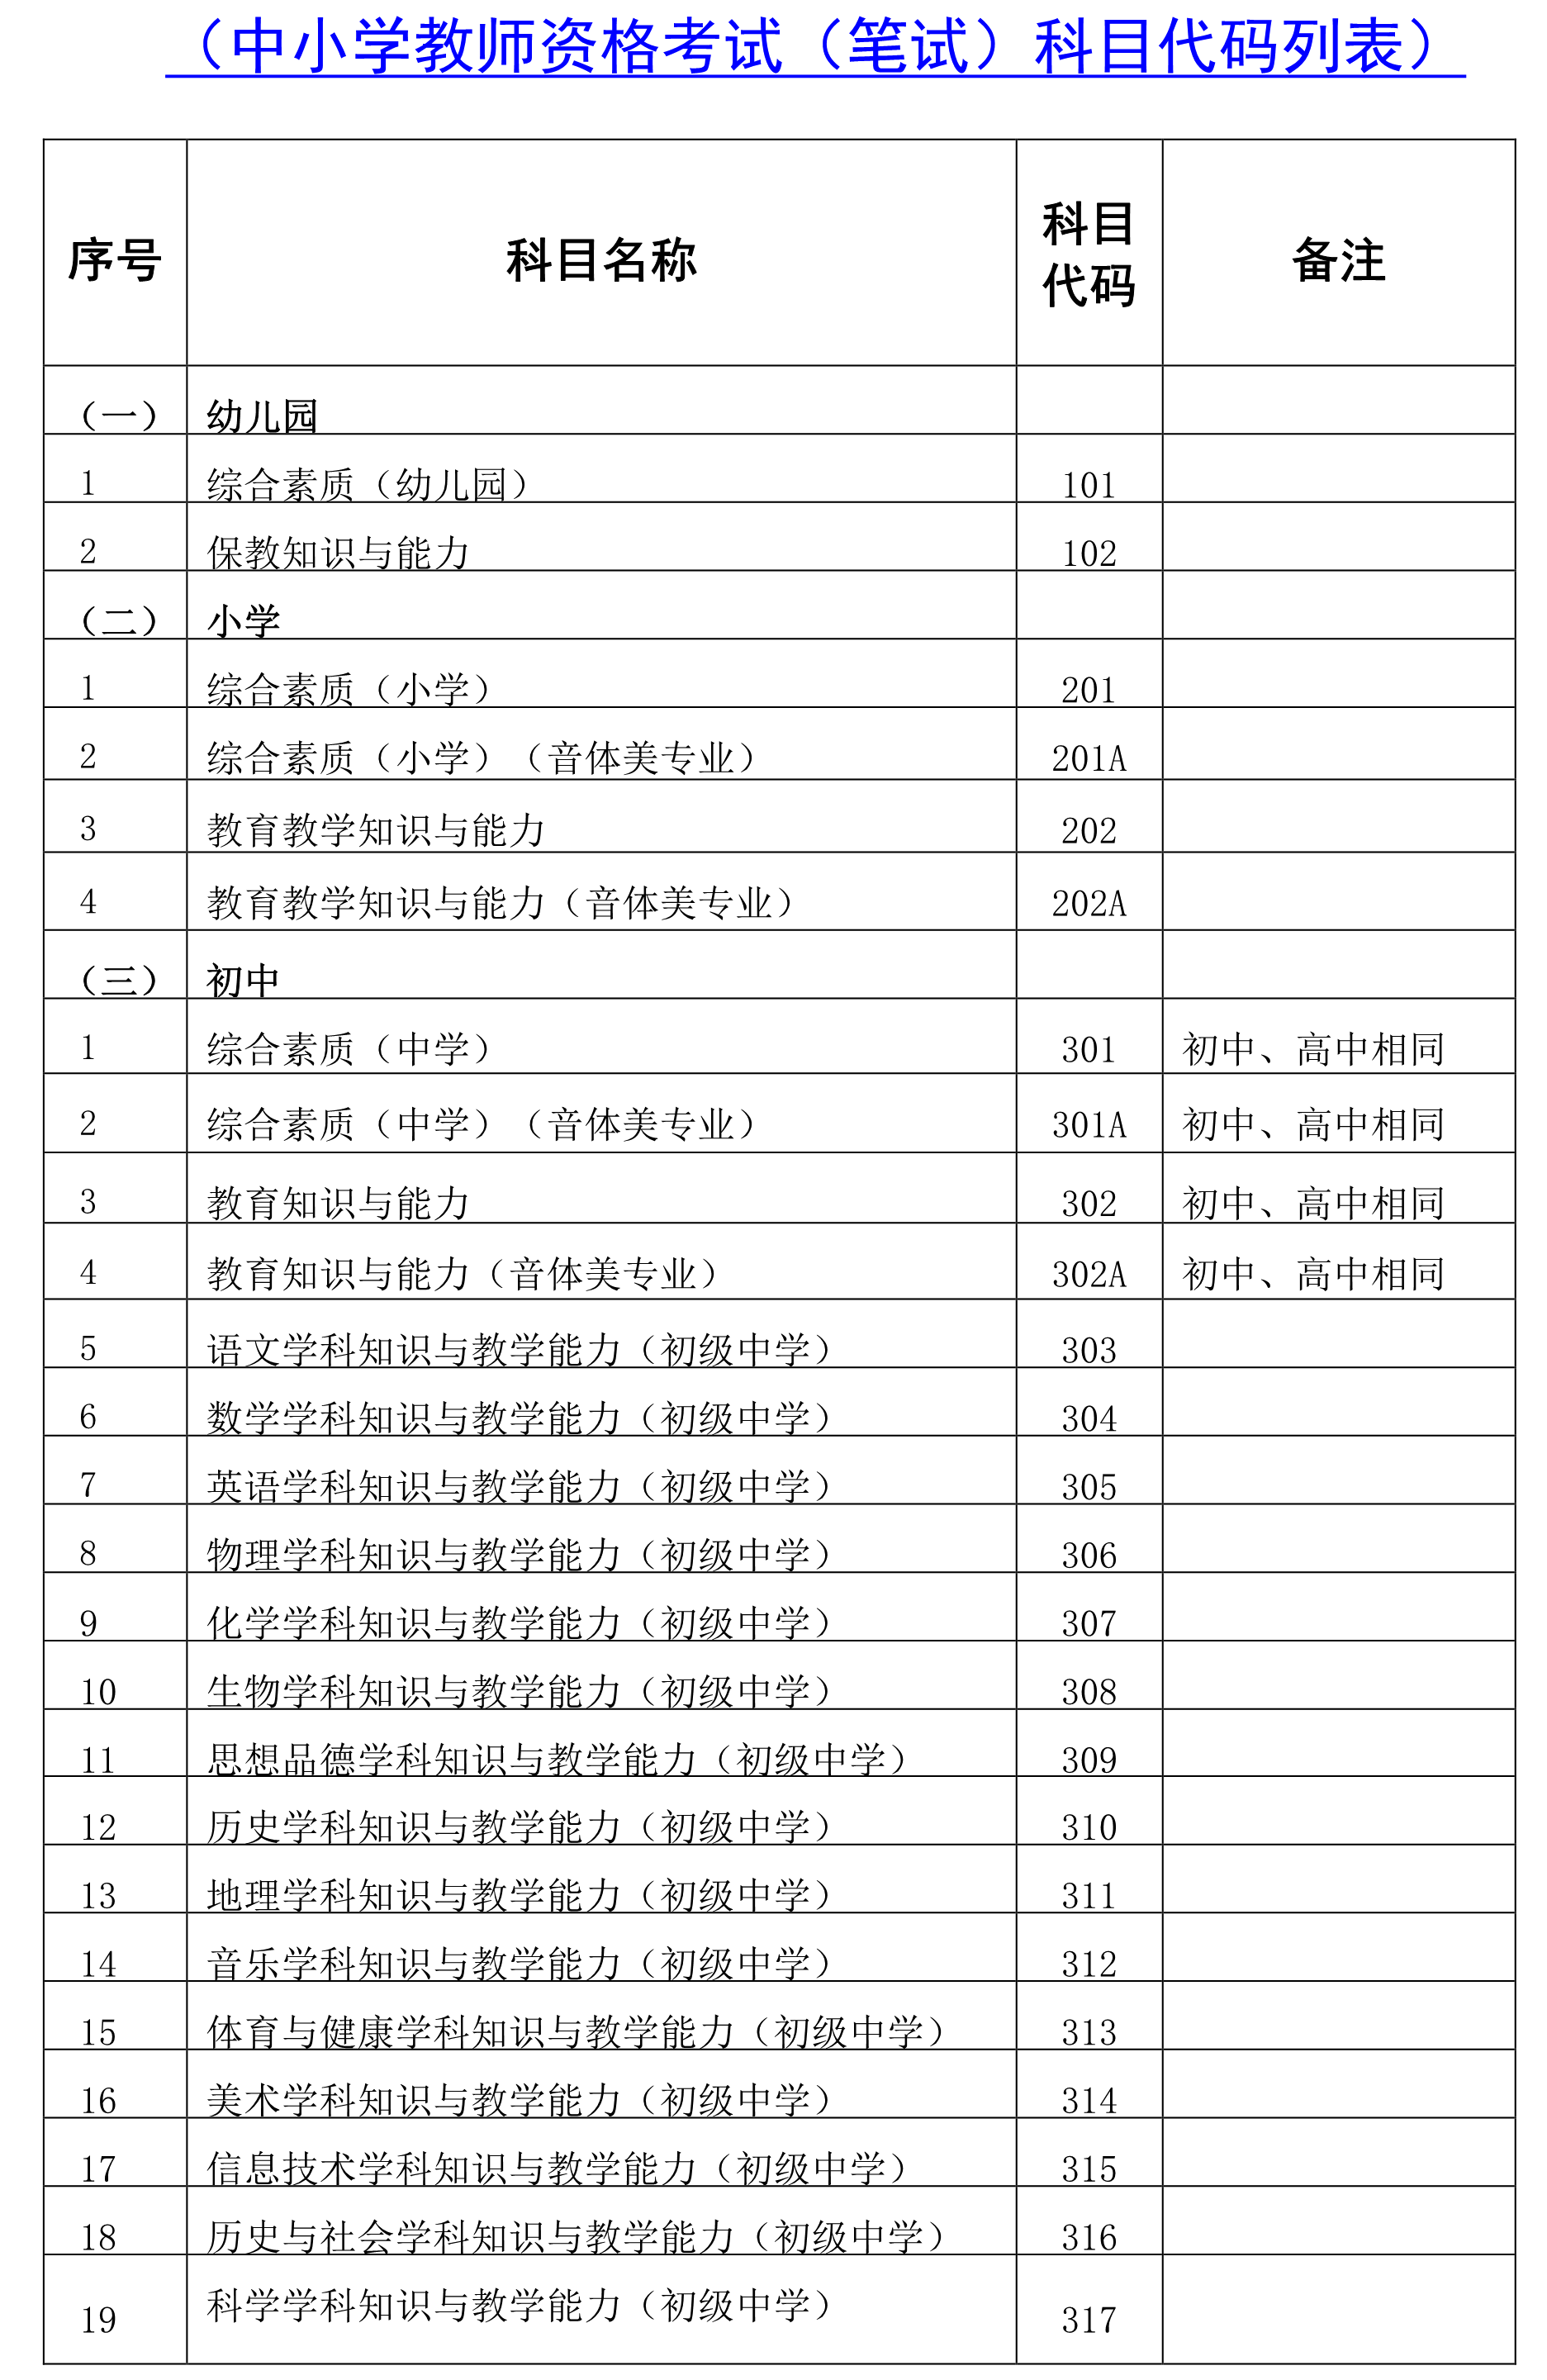 海南省2021年上教师资格考试笔试公告